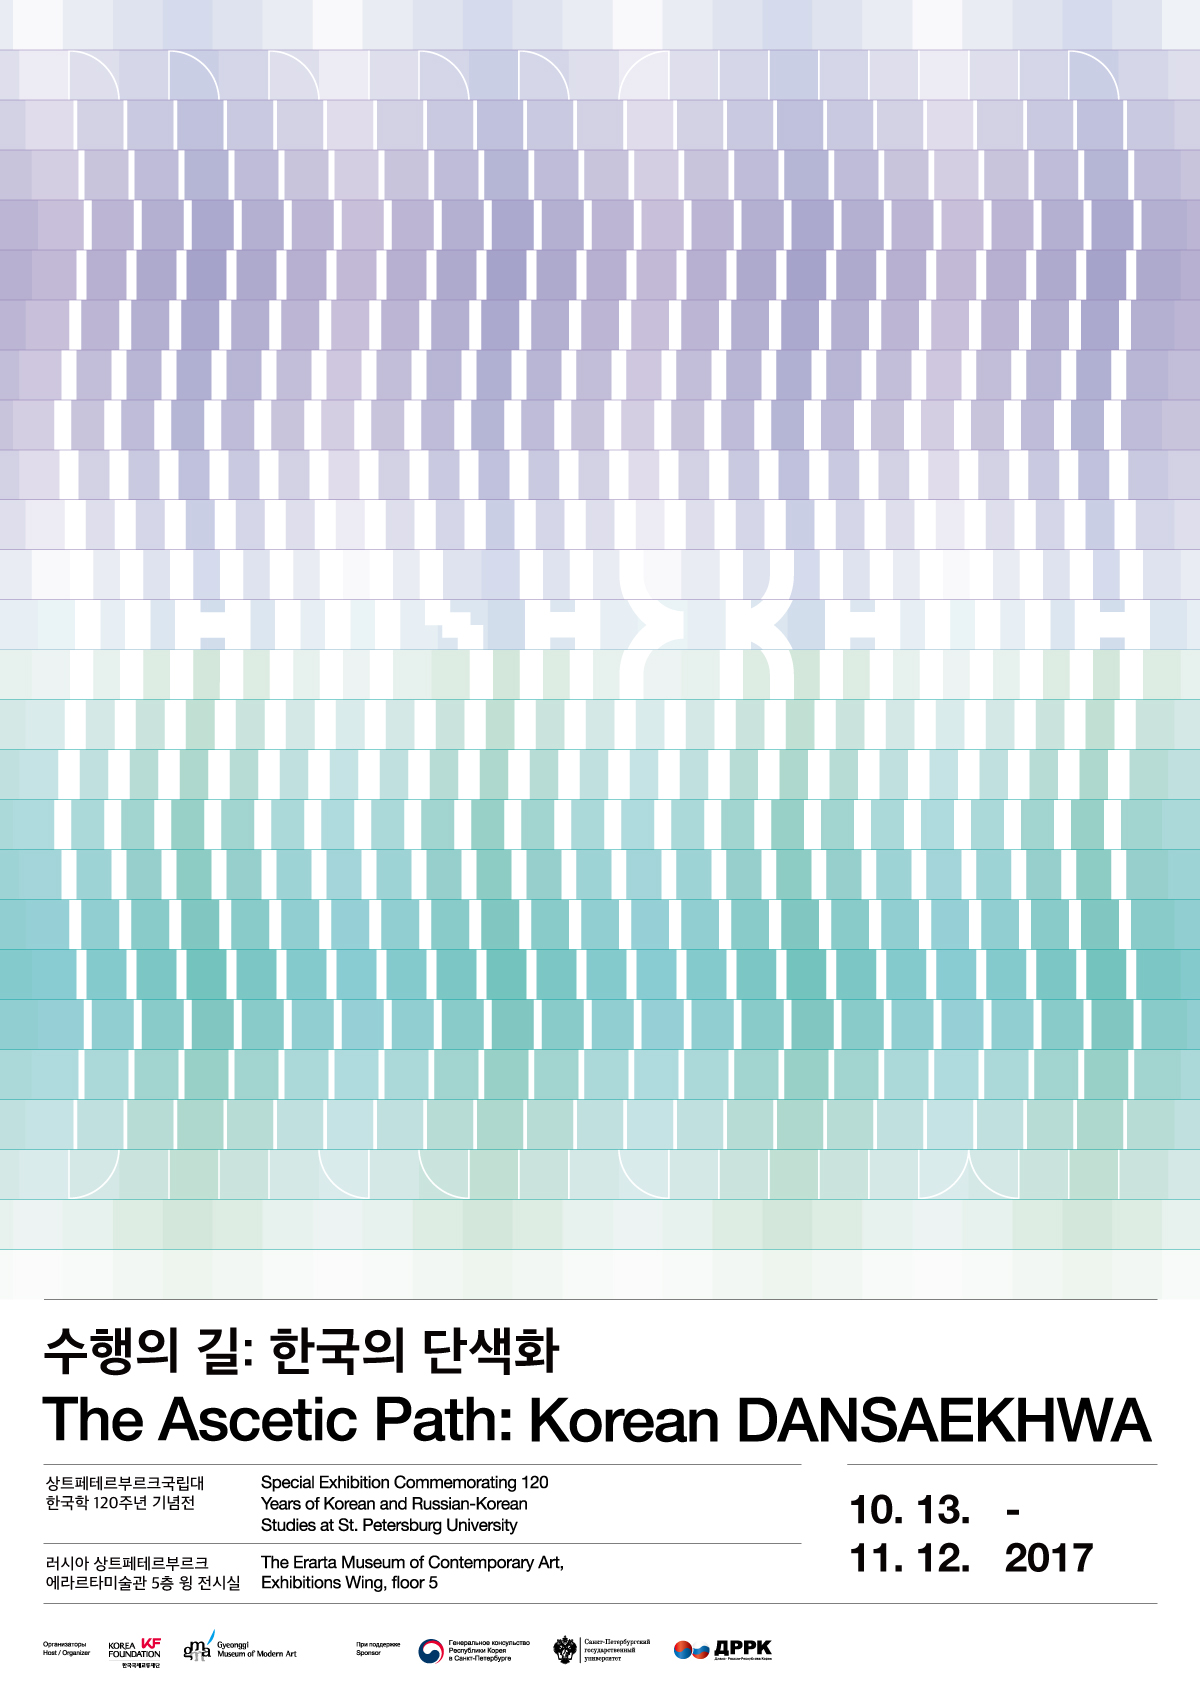 Special Exhibition Commemorating 120 Years of Korean and Russian-Korean Studies at St. Petersburg University 《The Ascetic Path: Korean DANSAEKHWA》